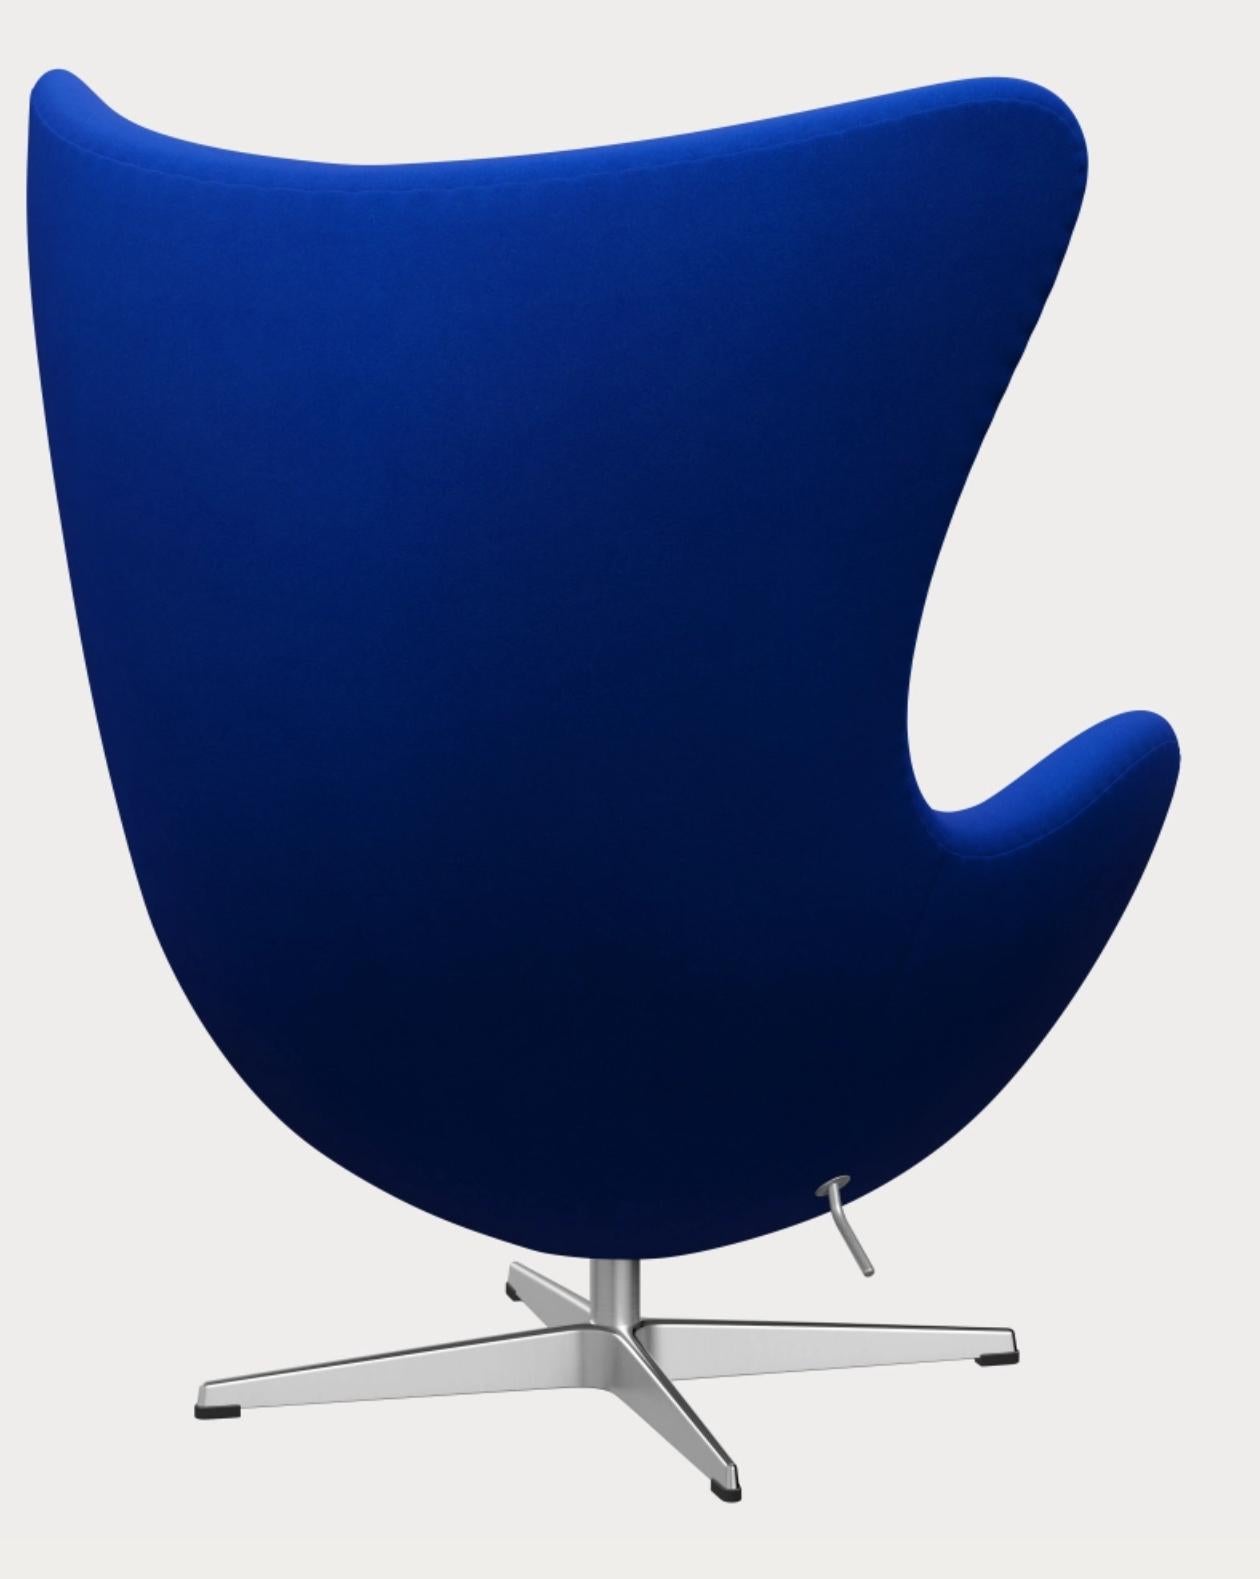 Danish The Egg chair by Arne Jacobsen for Fritz Hansen, Blue, Denmark, 1958, 2000s. For Sale